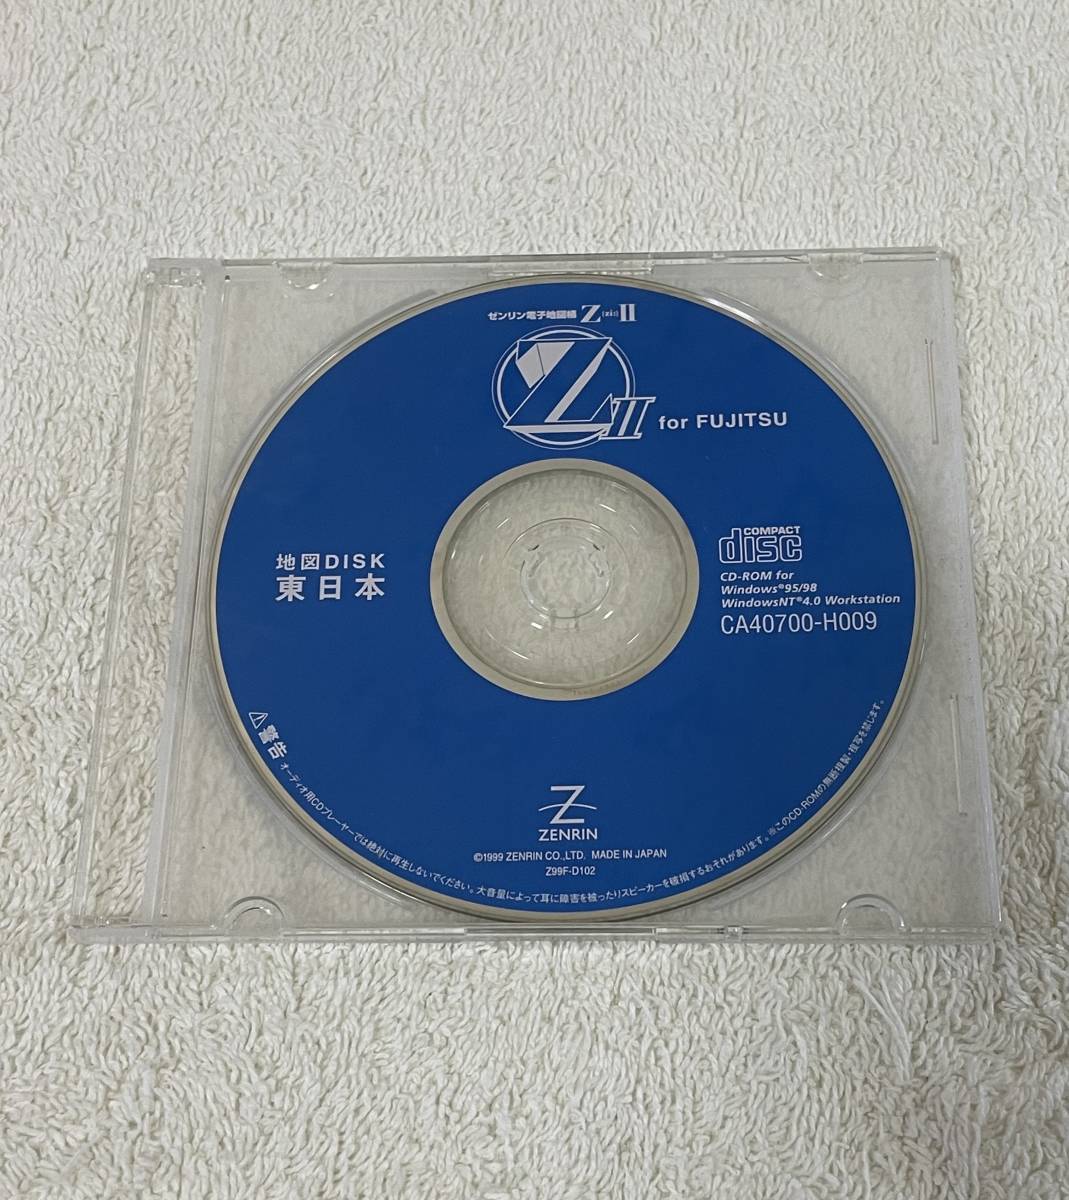  Fujitsu zen Lynn электронный атлас ZⅡ карта диск Восточная Япония CD-ROM